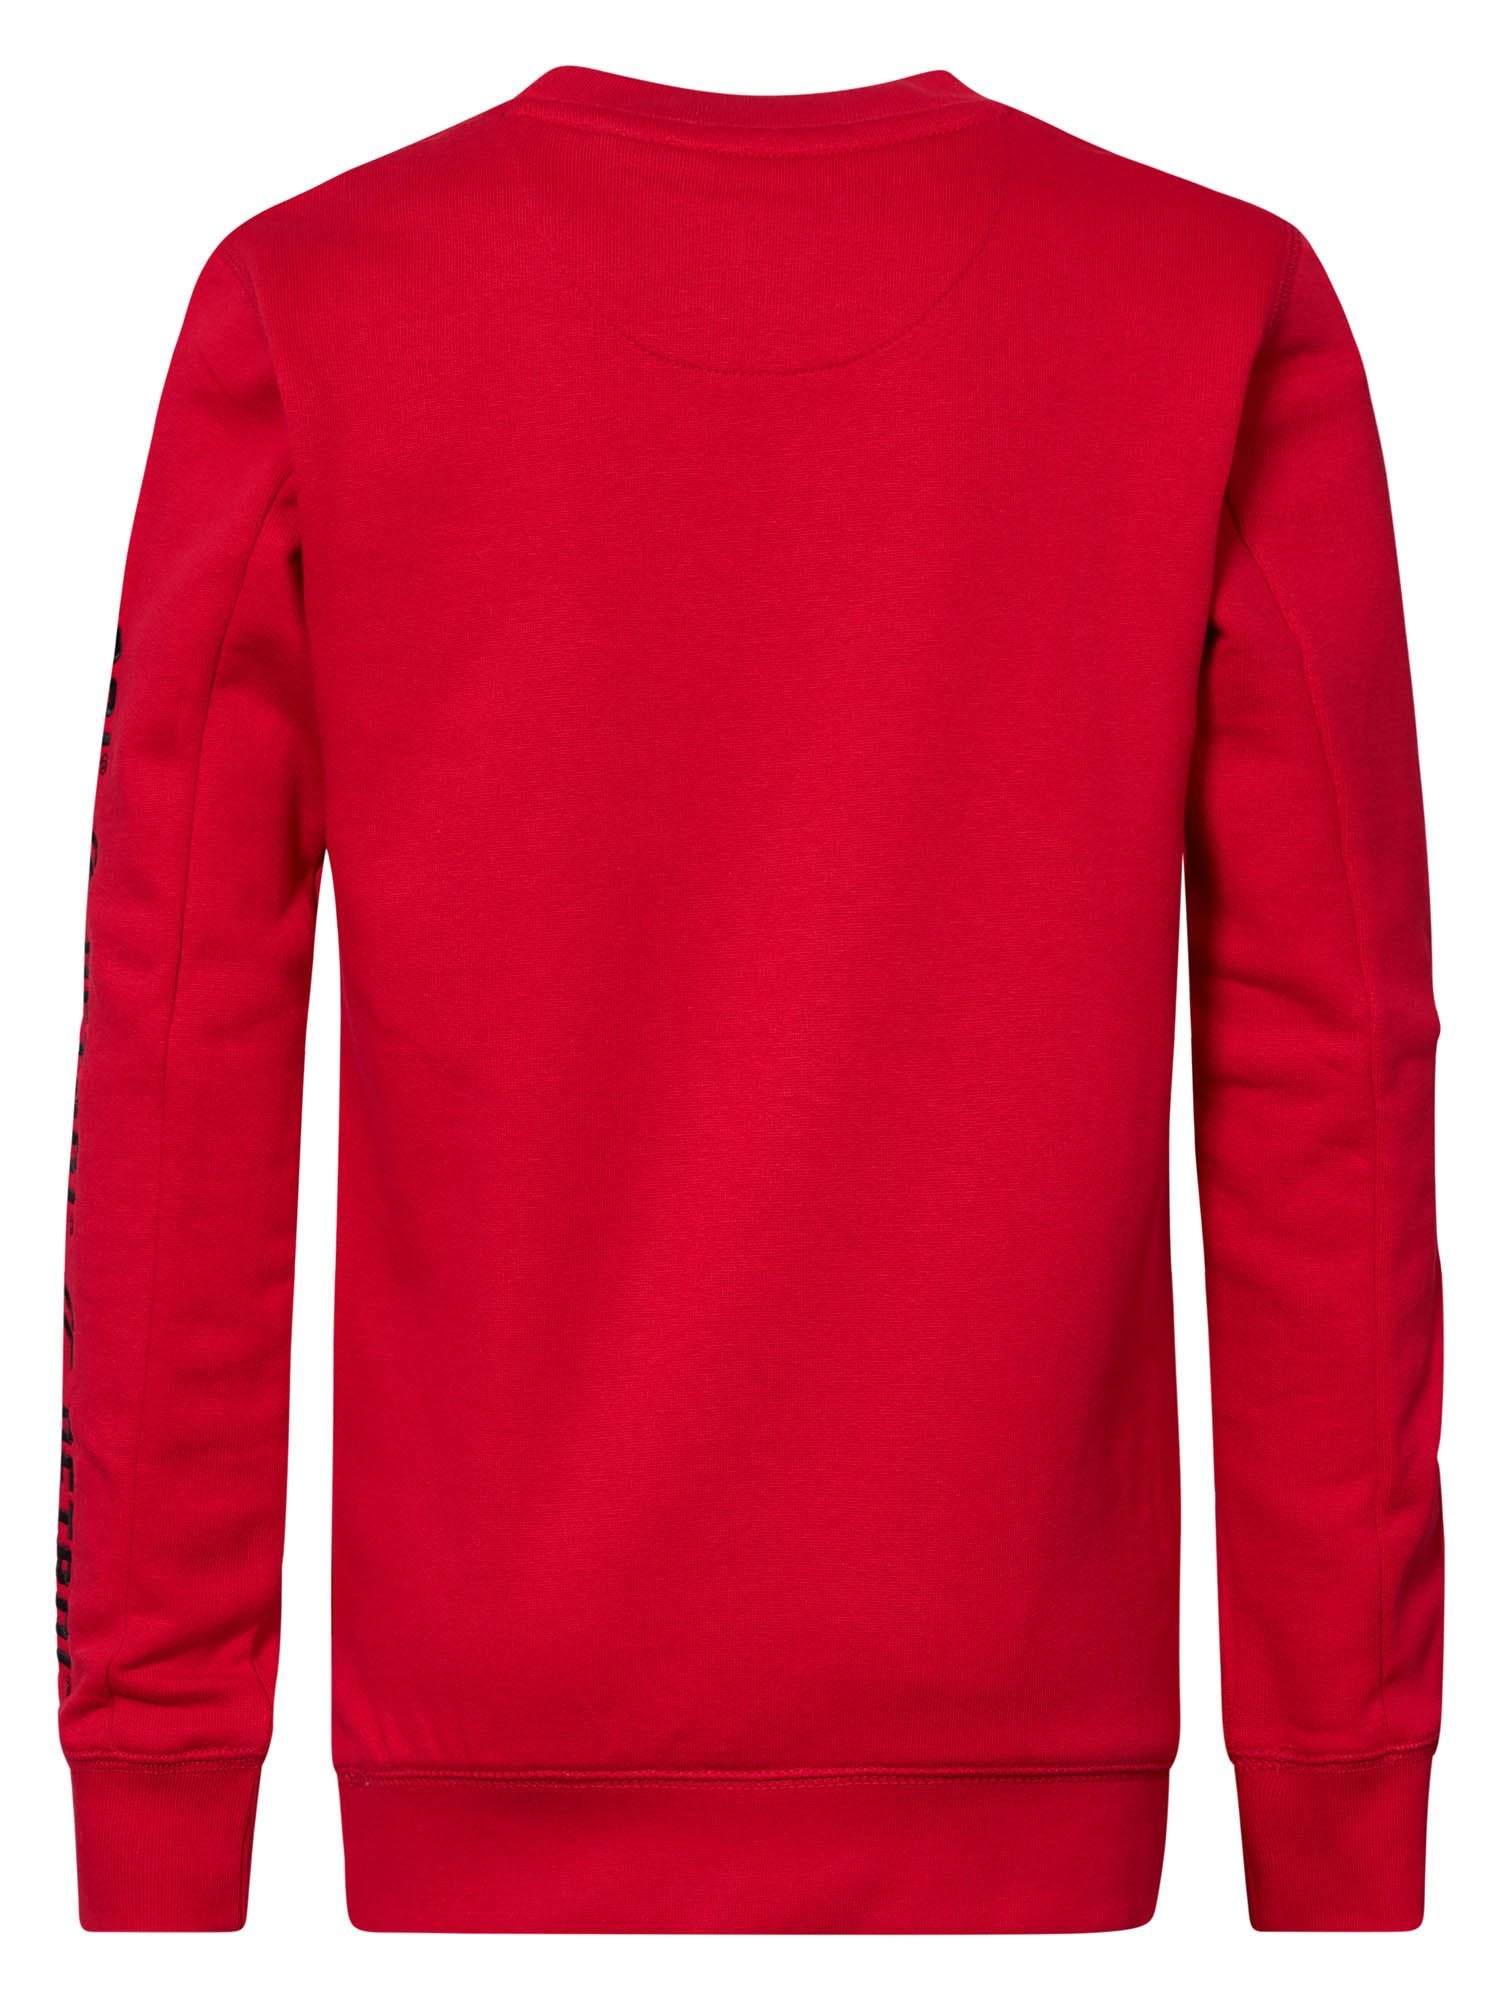 Jongens Sweater Crewneck with Text on Sleeve van Petrol in de kleur Urban Red in maat 164.